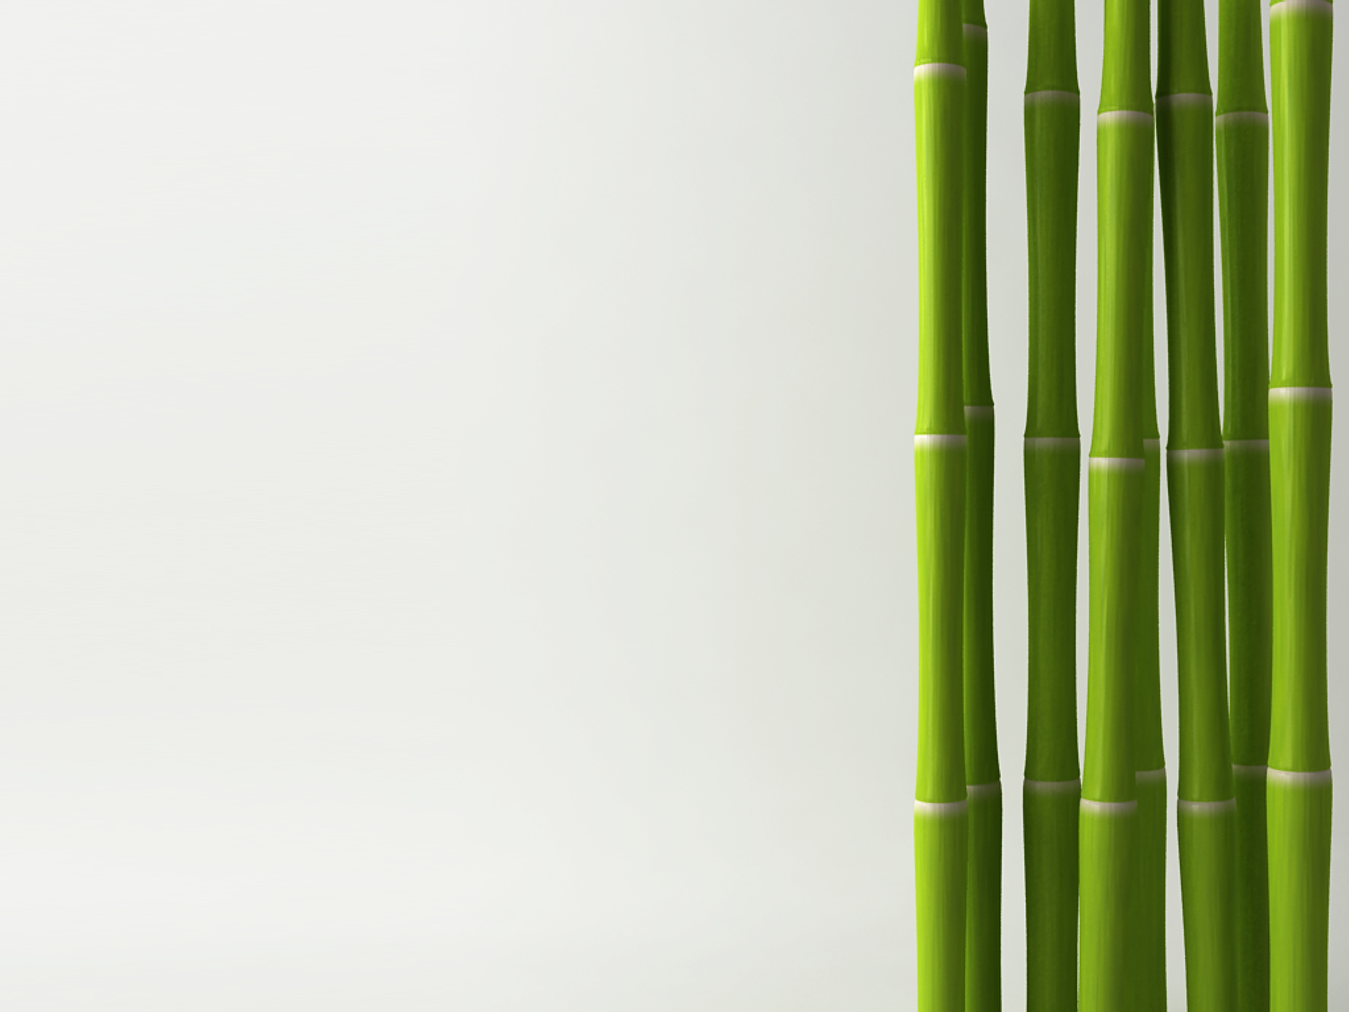 Биг бамбу big bambooo com